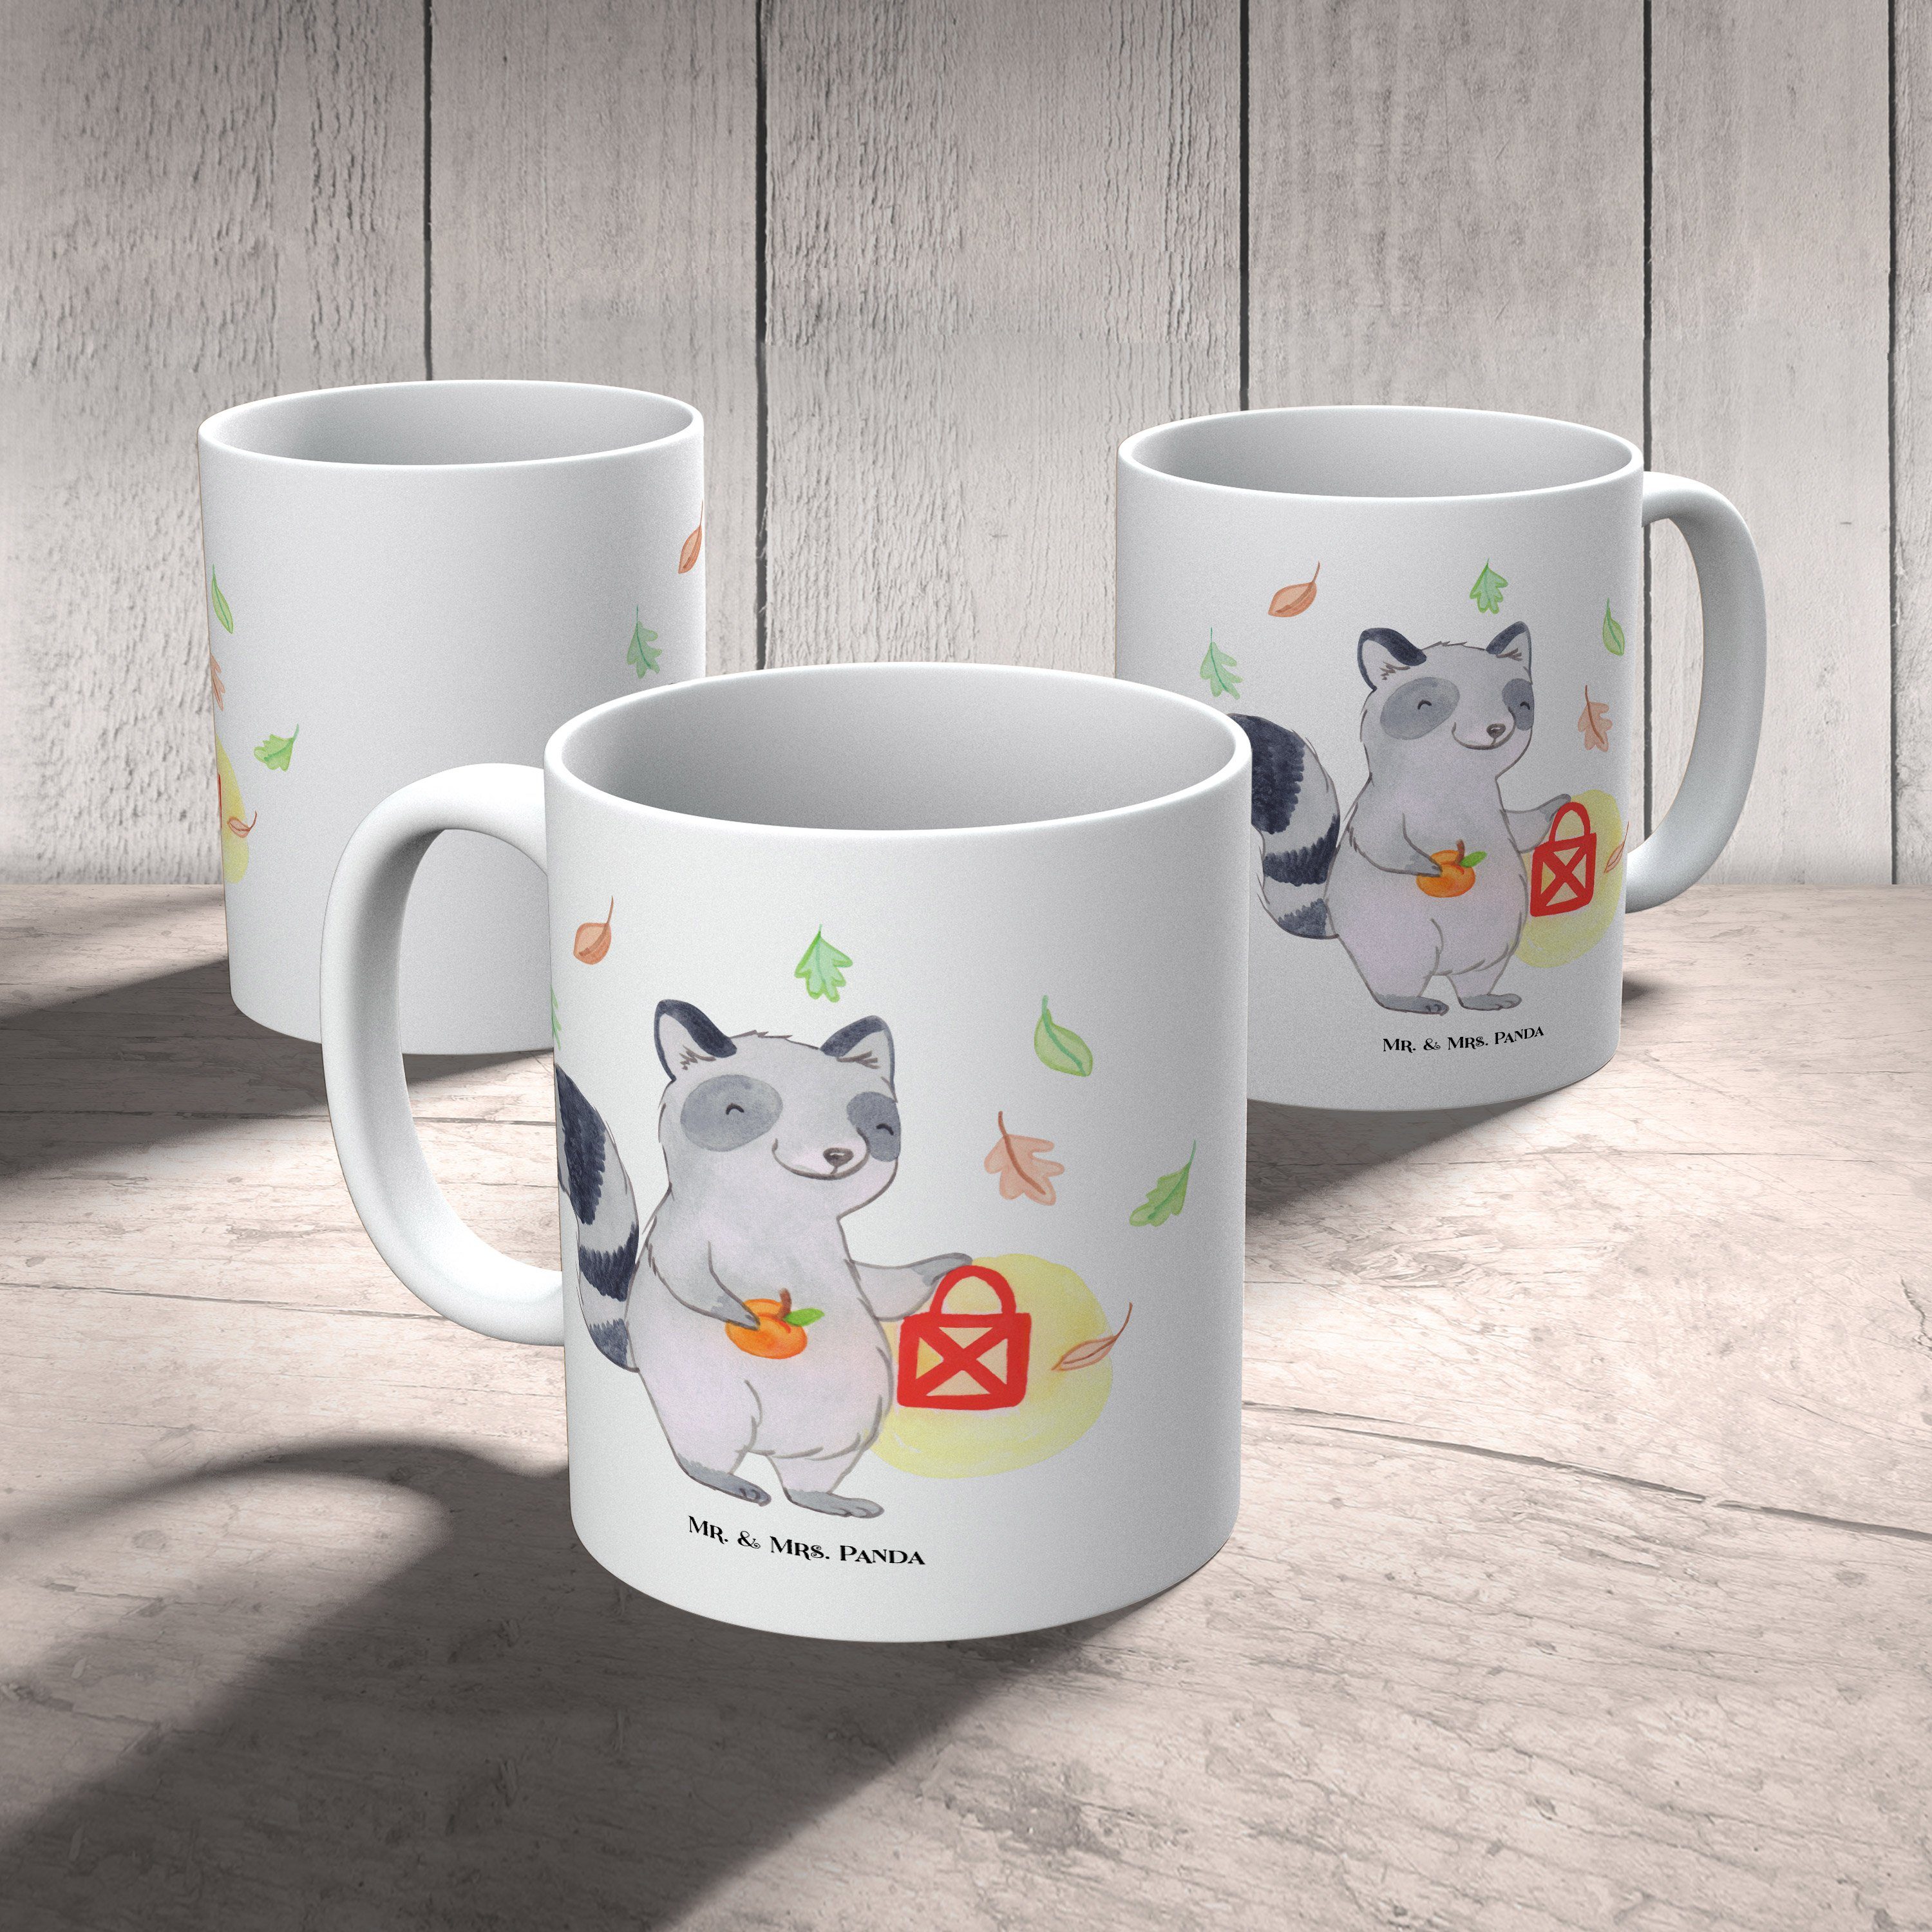 Mr. & - Hal, Laterne Waschbär Tasse - Weiß Panda Geschenk, Keramik Kaffeetasse, Tasse, Teetasse, Mrs